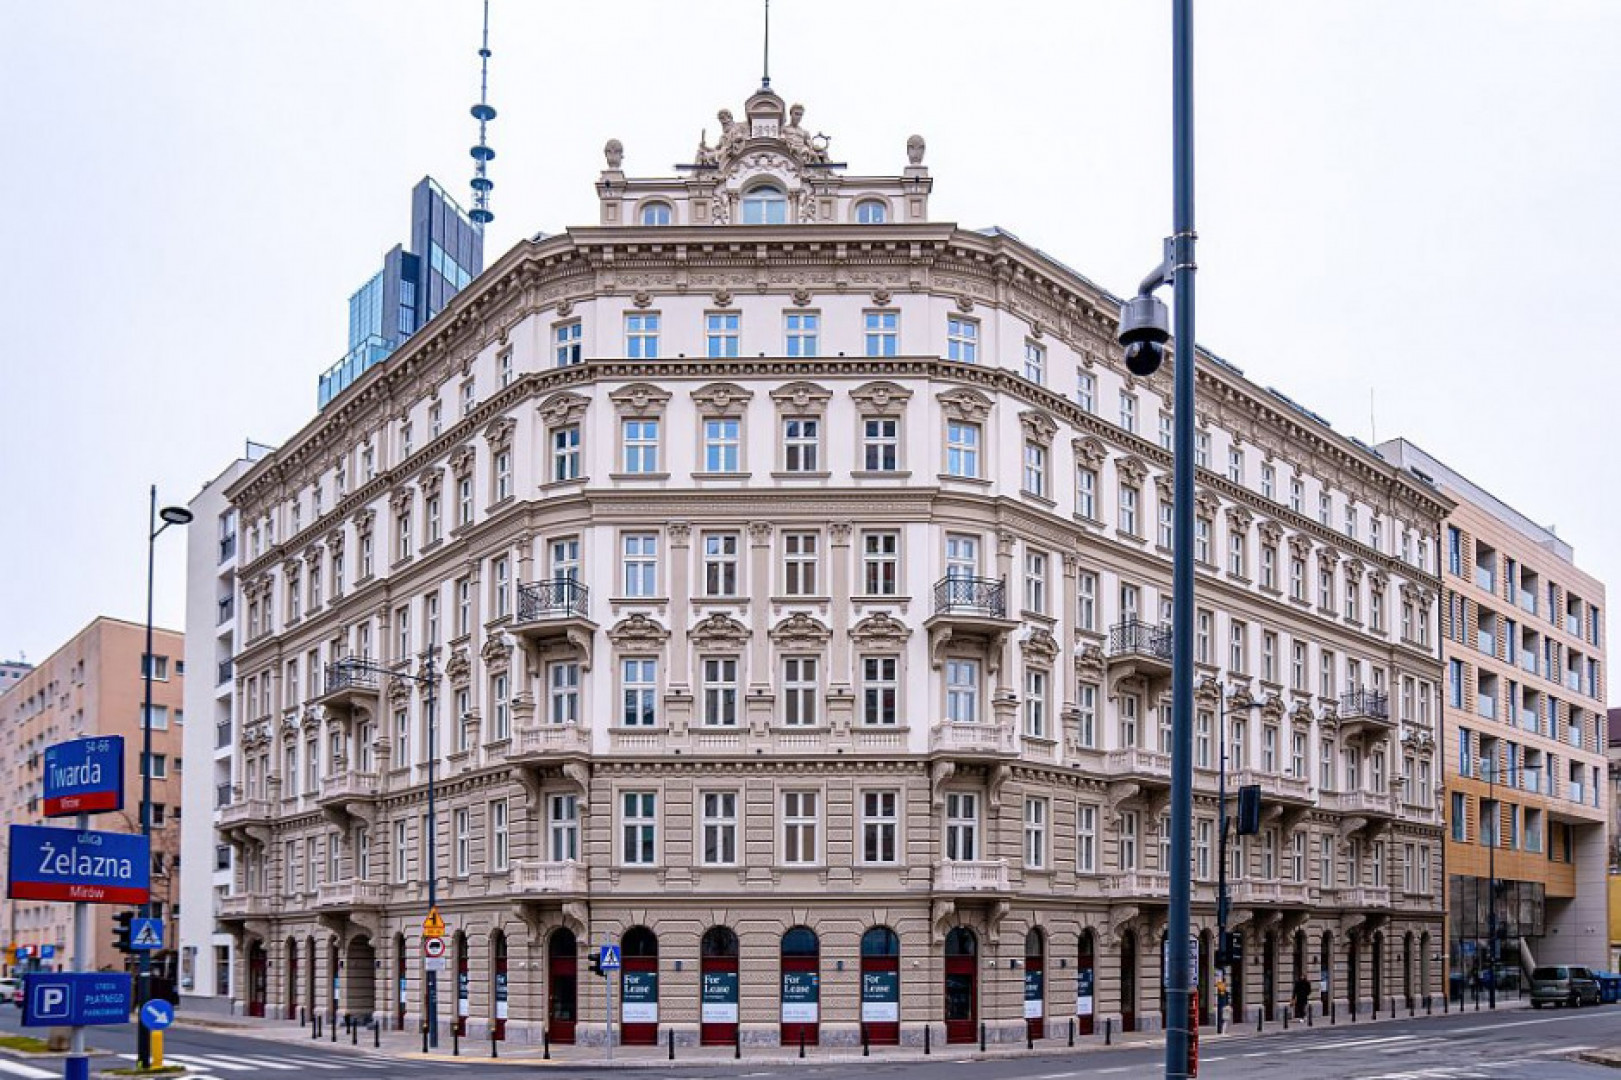 AFI Europe jest długoterminowym inwestorem z ambicją funkcjonowania w pierwszej piątce operatorów PRS w Polsce pod marką AFI Home. W maju 2023 r. firma oficjalnie otworzyła warszawską inwestycję AFI Home Złota 83 – nieruchomość oferuje 146 apartamentów przeznaczonych na wynajem długoterminowy. Fot. AFI.